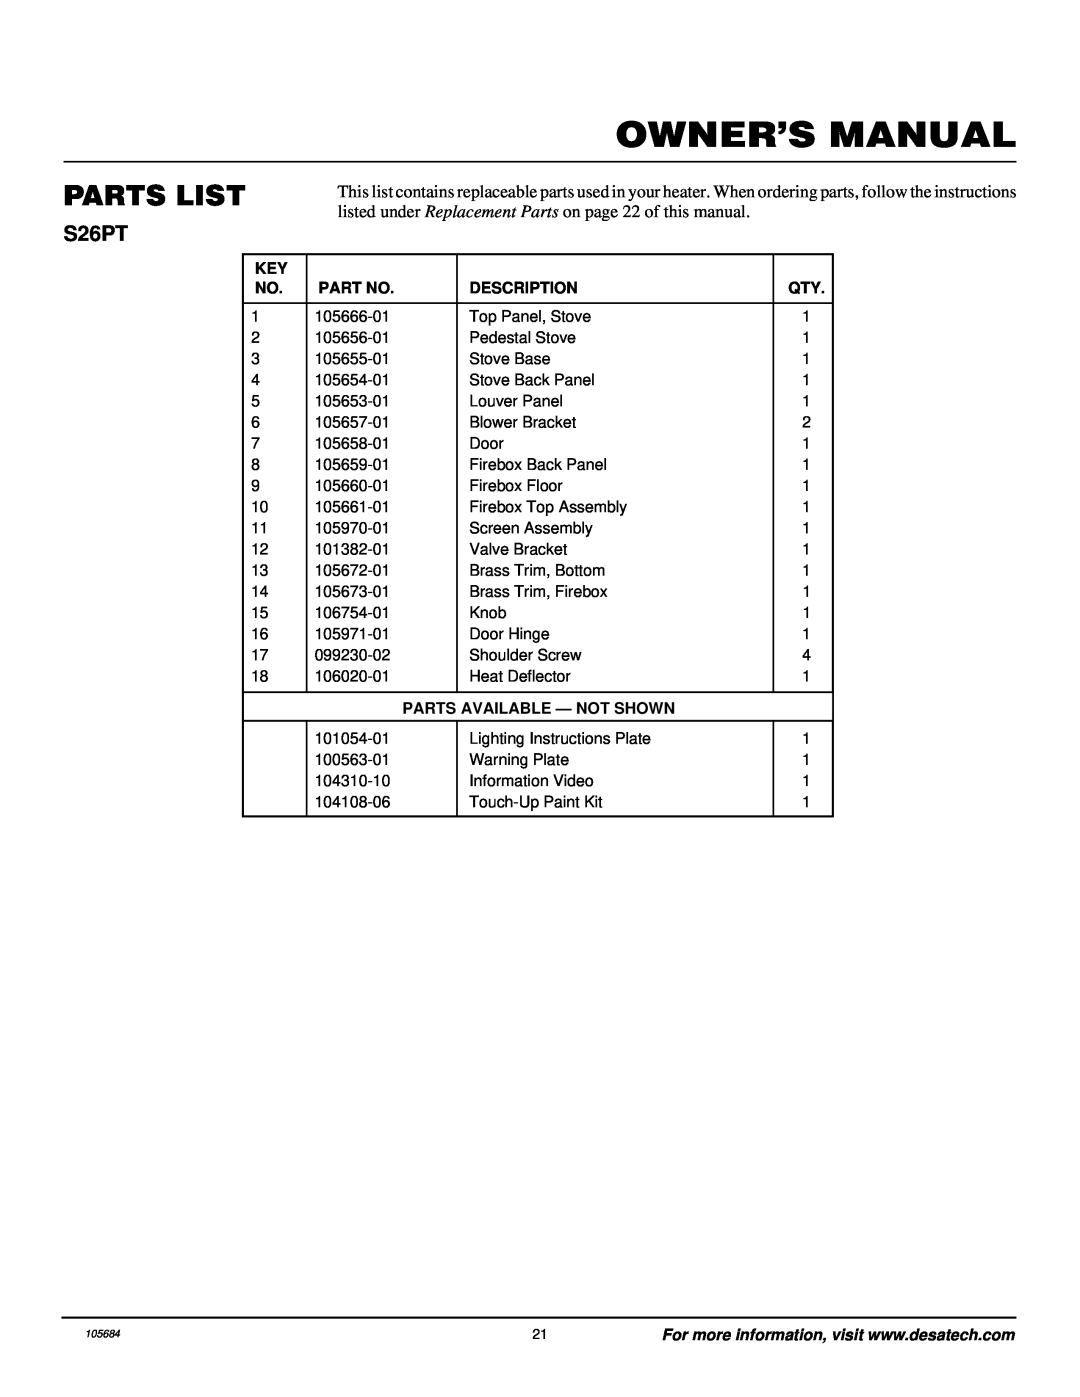 Desa Tech S26PT installation manual Parts List, Description, Parts Available - Not Shown 